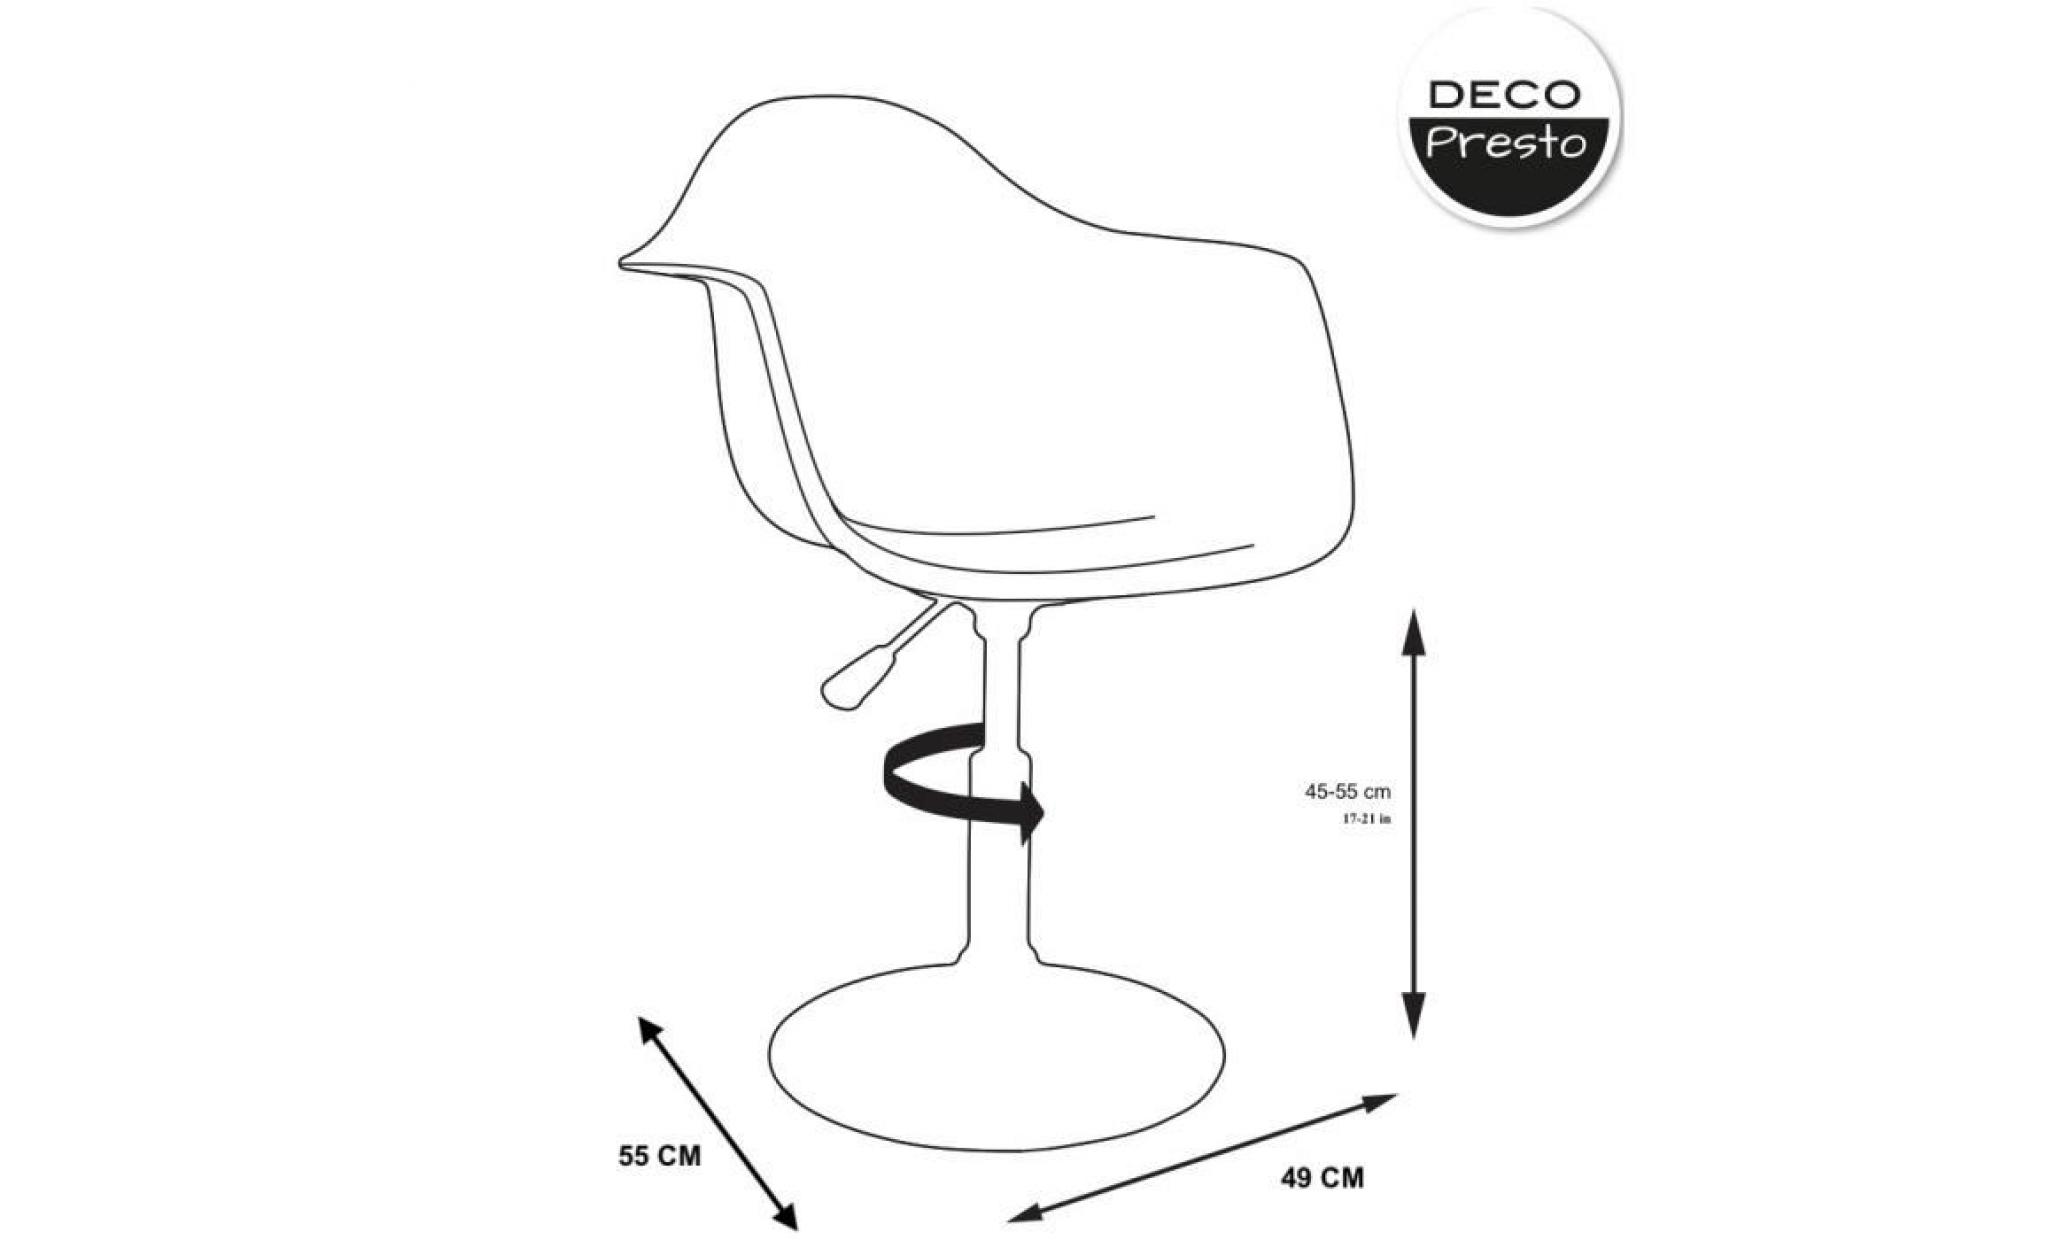 1 x fauteuil design  scandinave reglable pivotant  bleu ciel pieds: acier chrome decopresto dp dai bl 1 pas cher